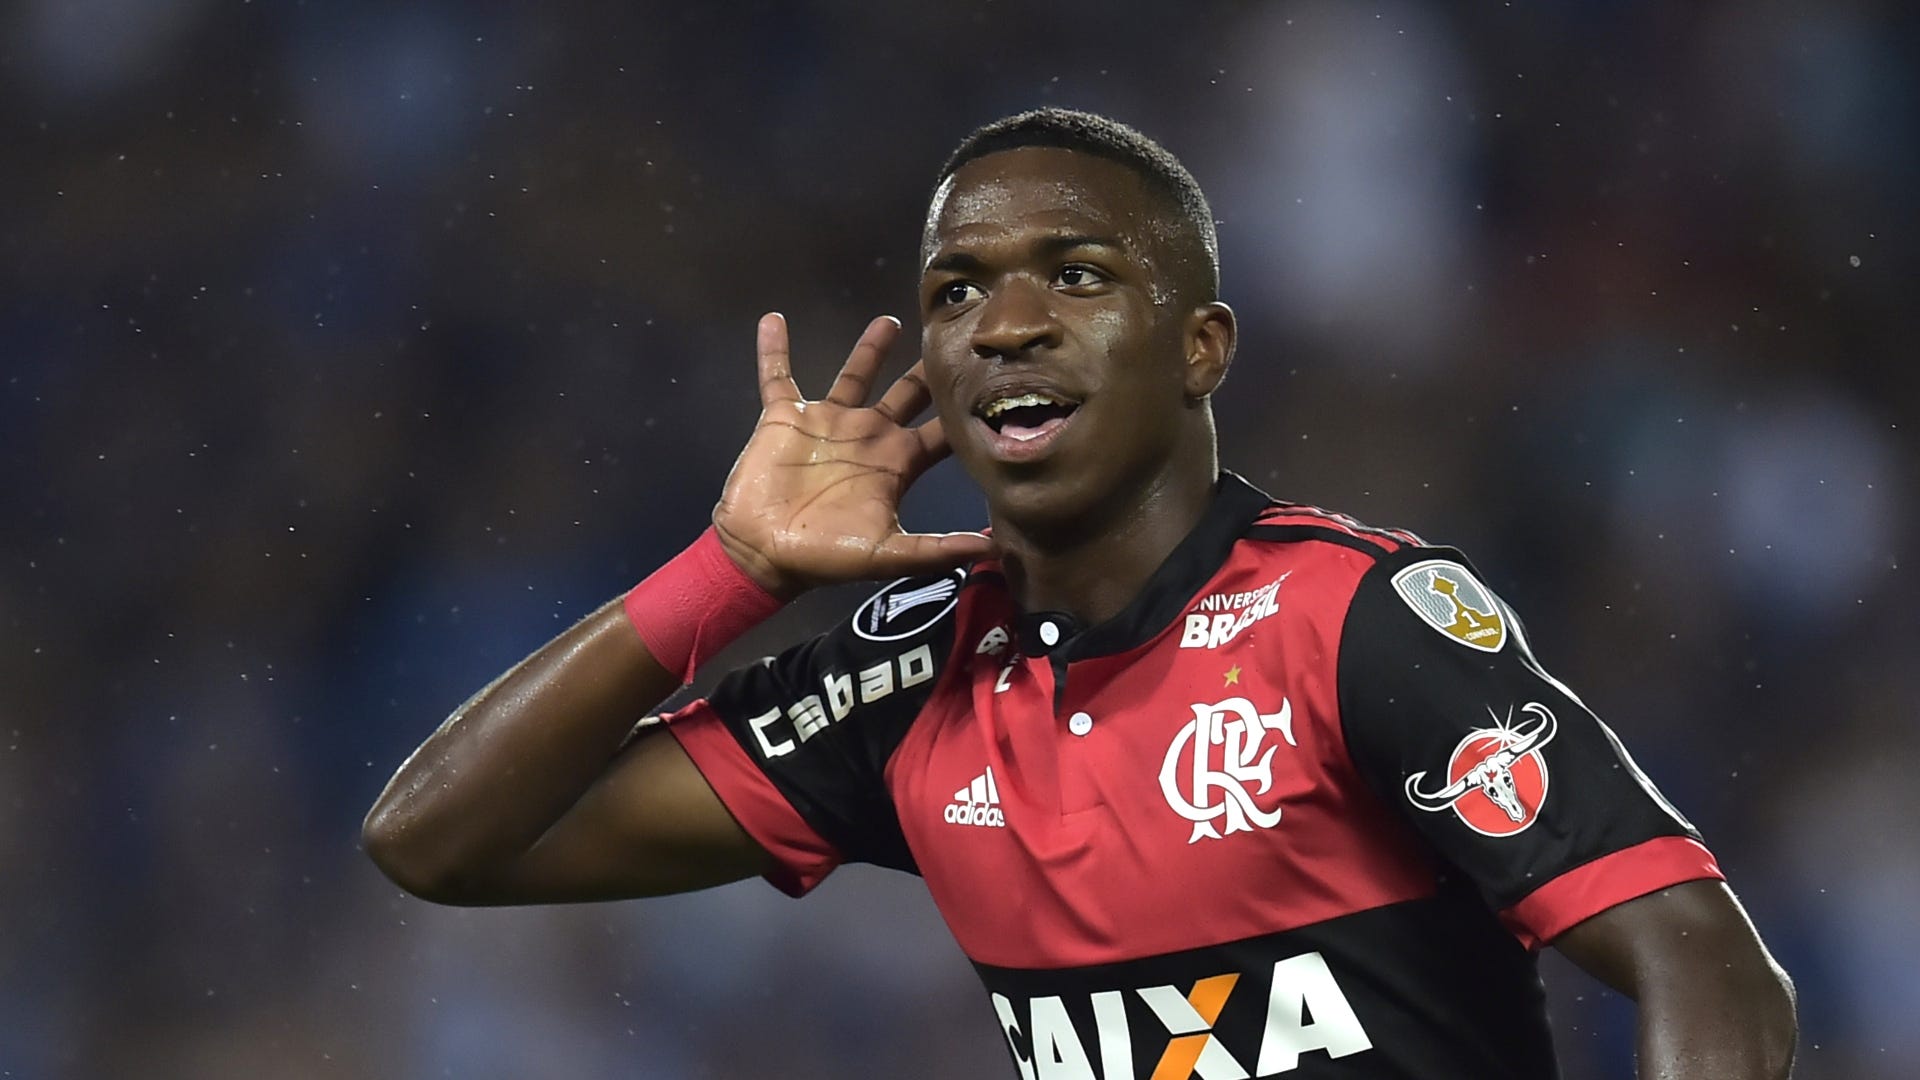 Vinicius en el Flamengo: cuántos partidos jugó, goles, asistencias y títulos | Goal.com Espana